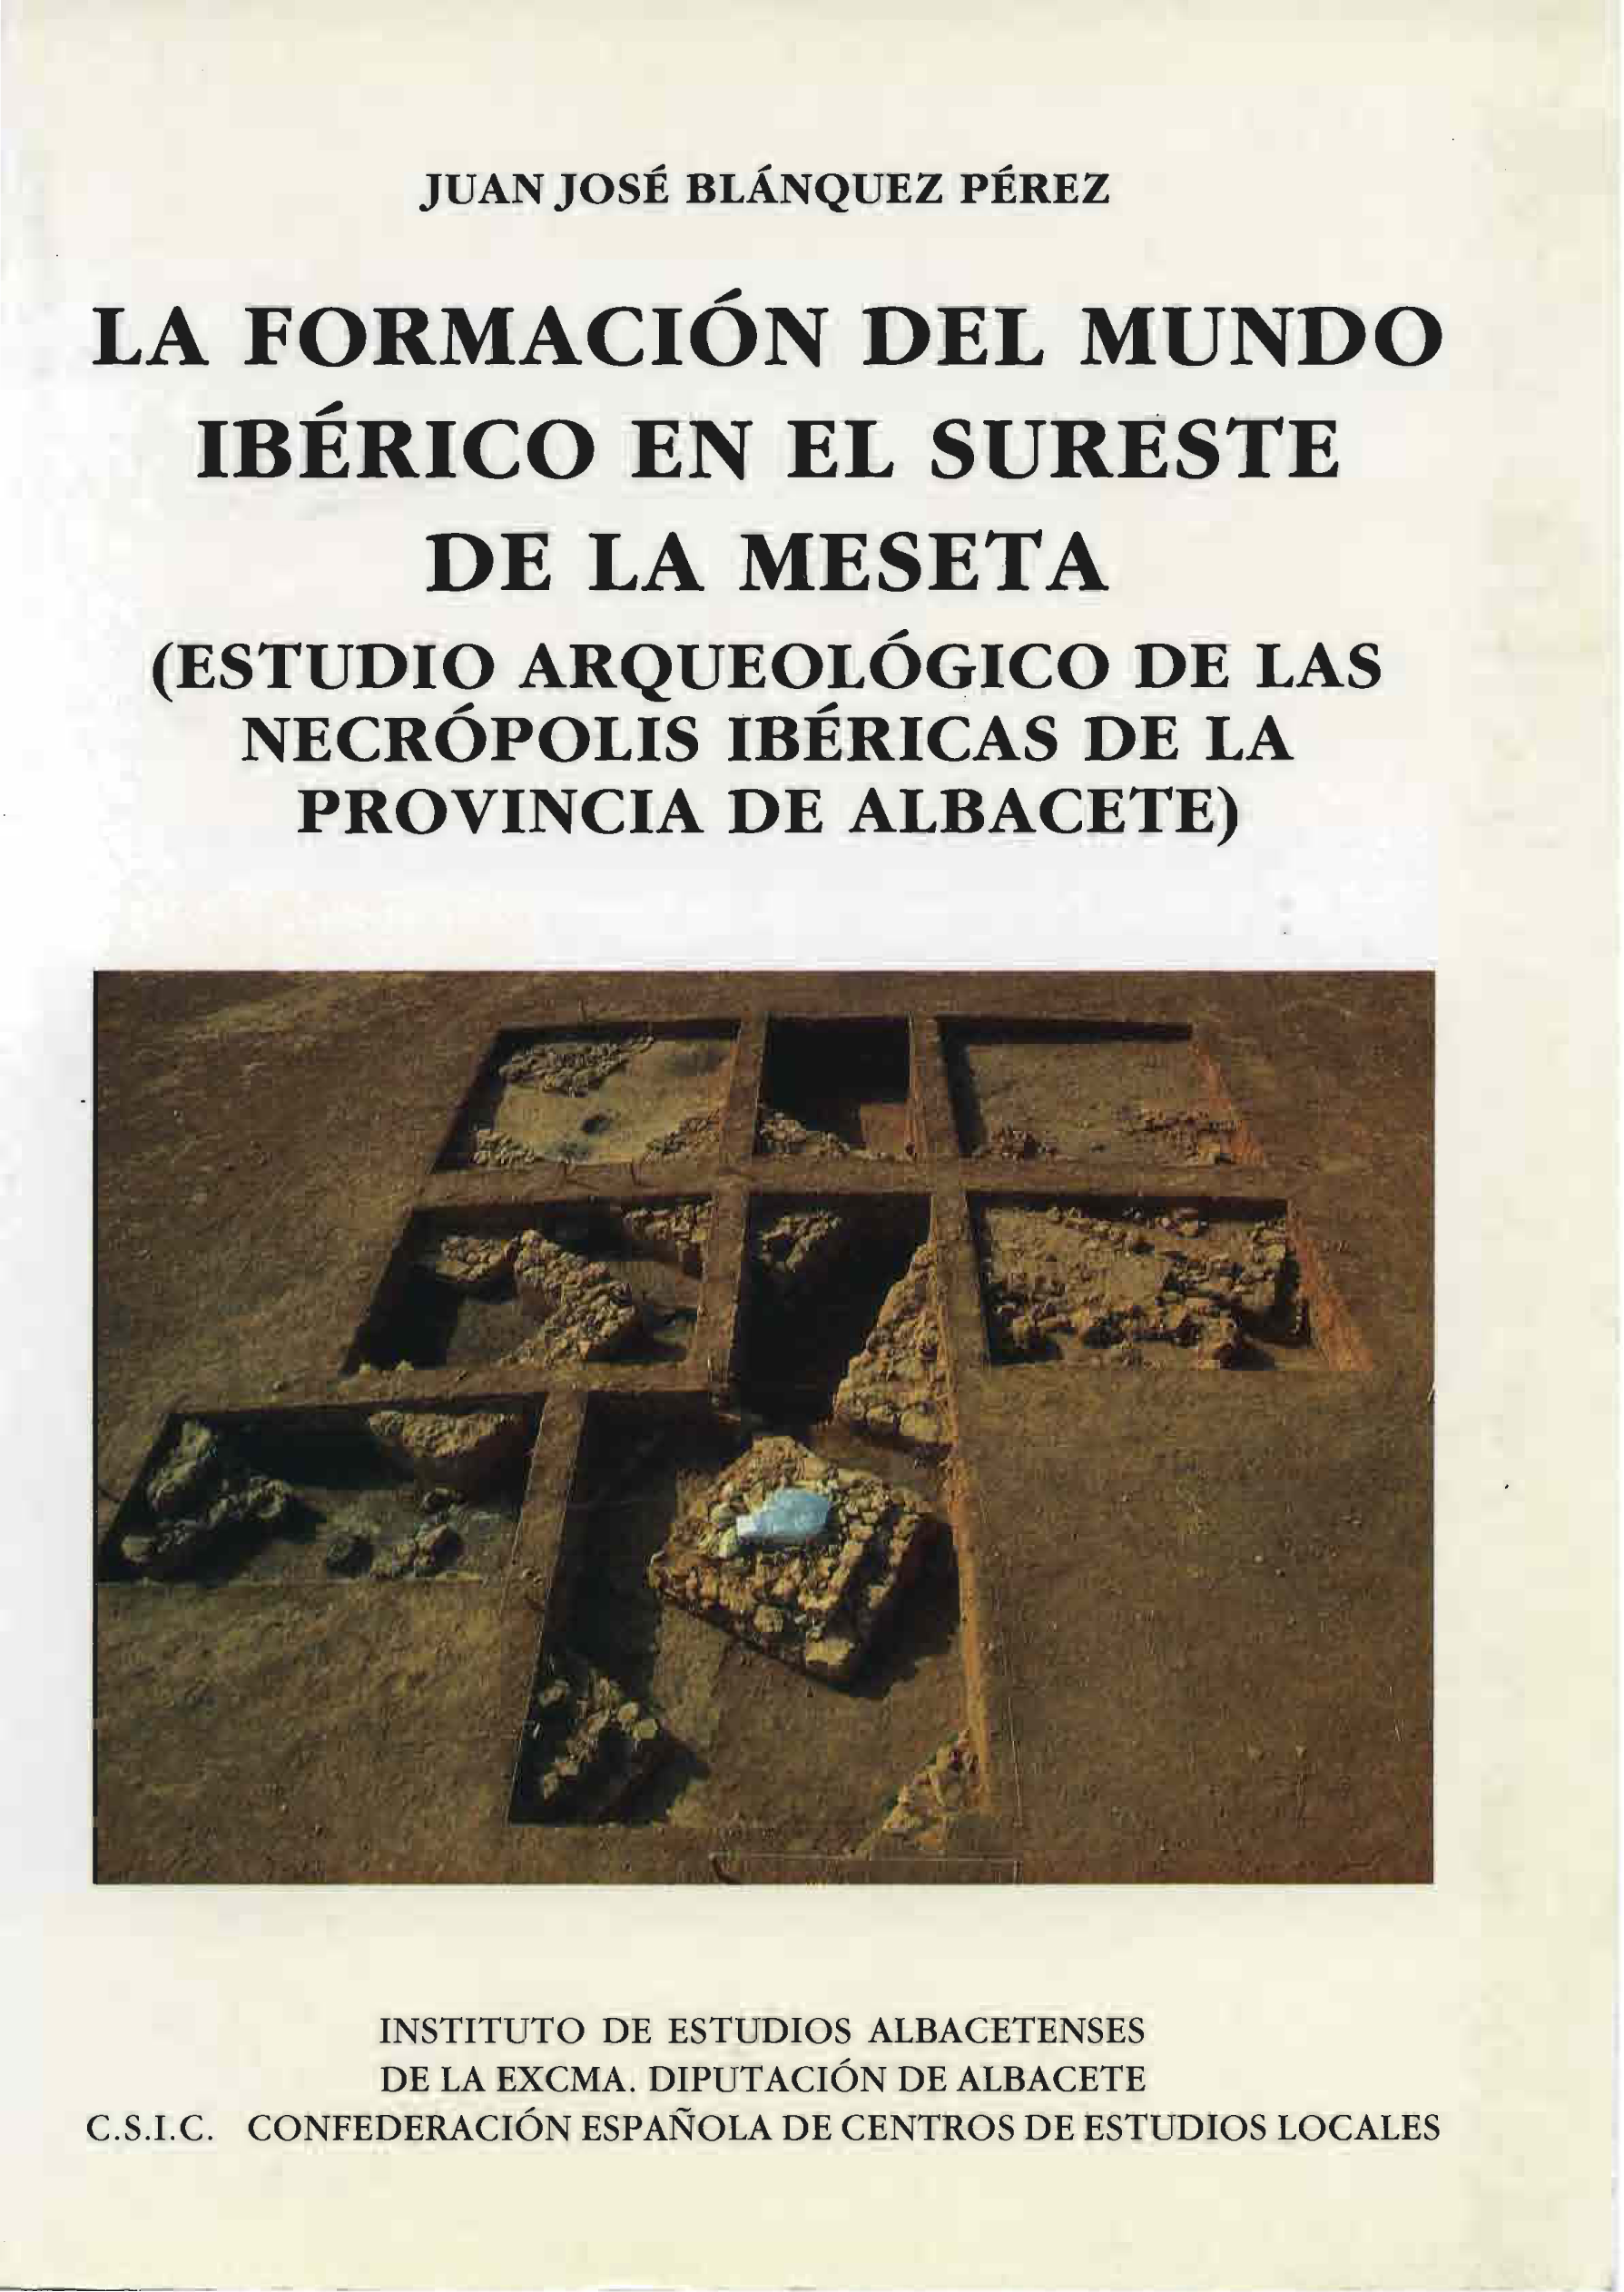 Imagen de portada del libro La formación del mundo ibérico en el sureste de la meseta